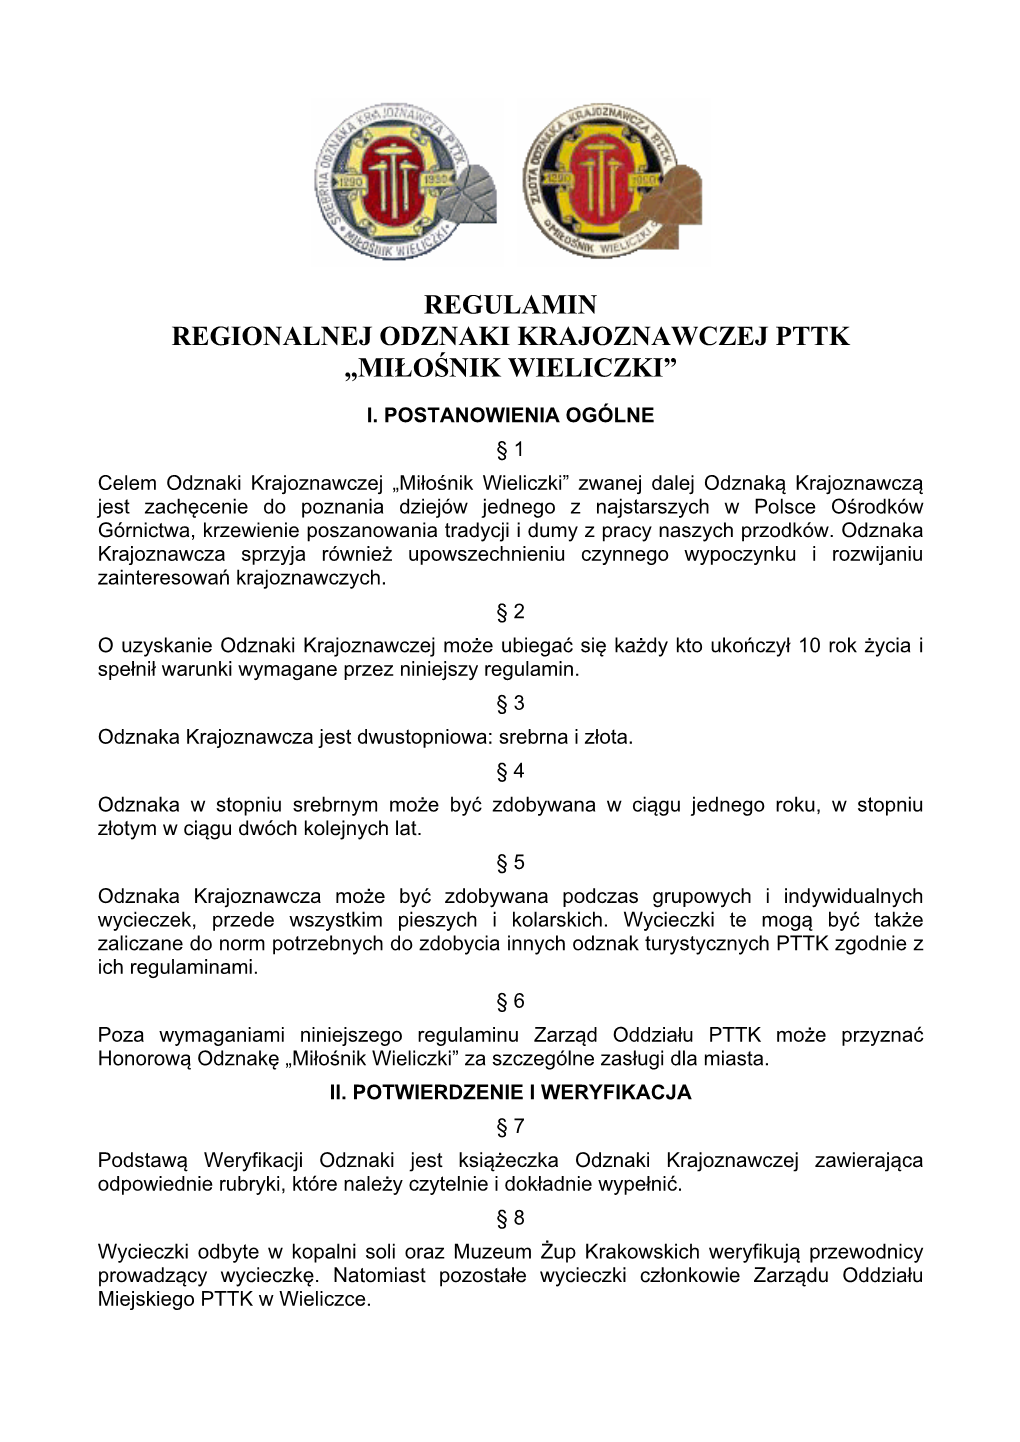 Regulamin Regionalnej Odznaki Krajoznawczej Pttk „Miłośnik Wieliczki”